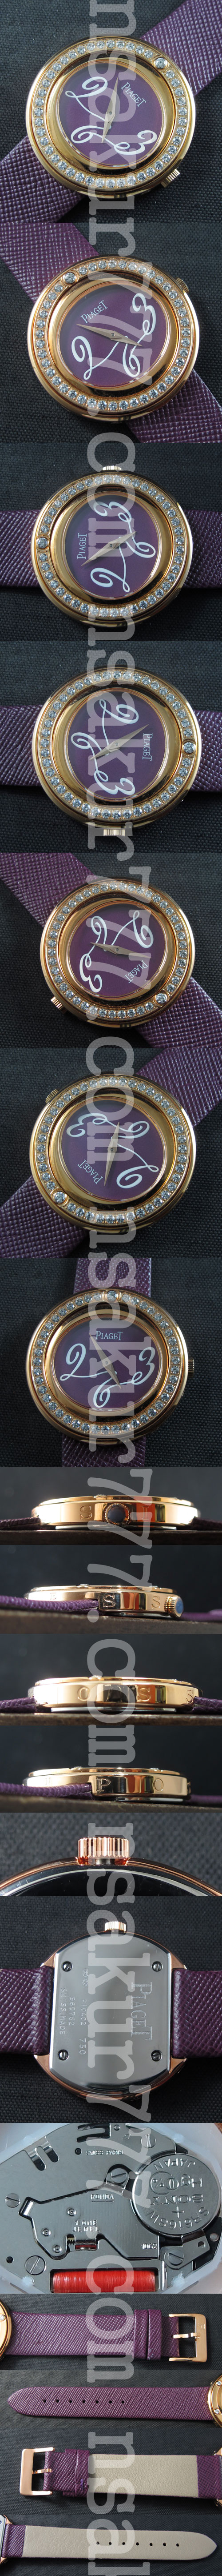 レプリカ腕時計ピアジェPossessionベゼル全面ダイヤモンド(12字位置大きいダイヤモンド付き)